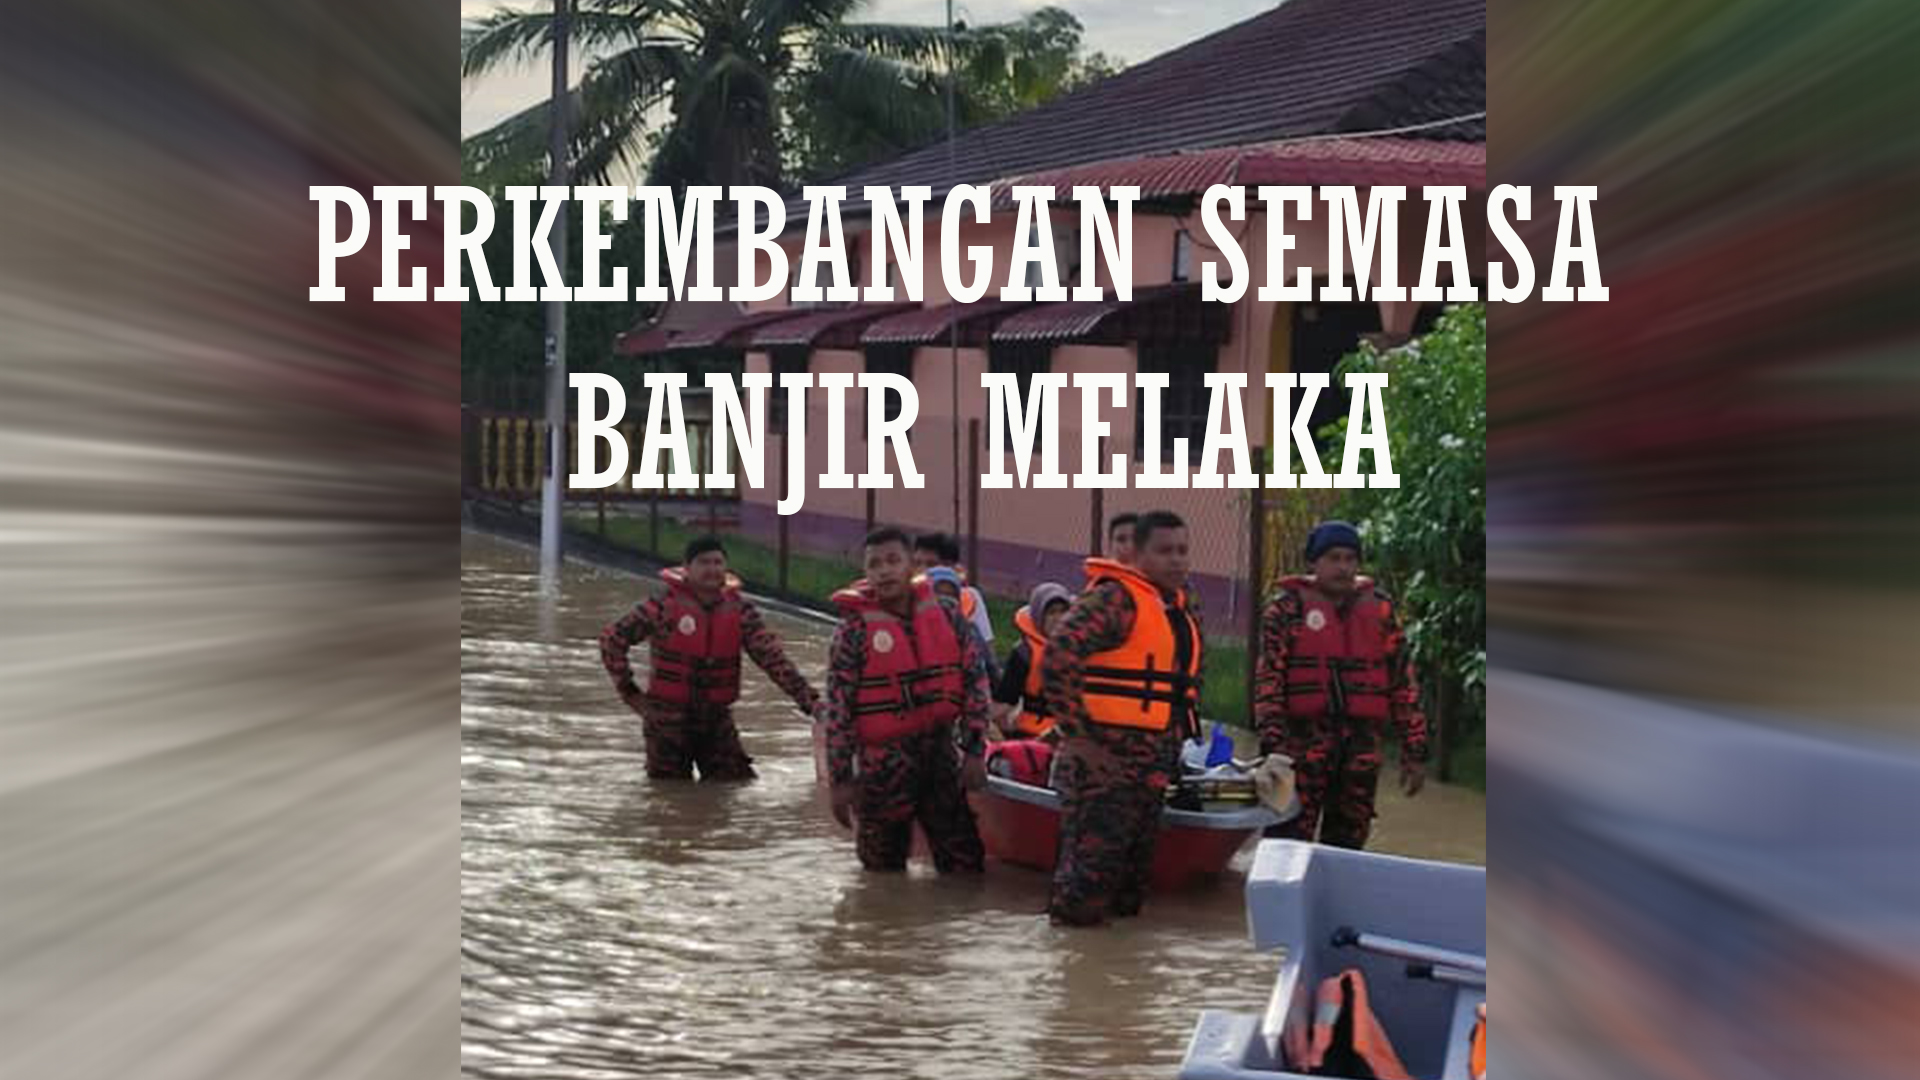 Perkembangan Semasa Banjir Melaka